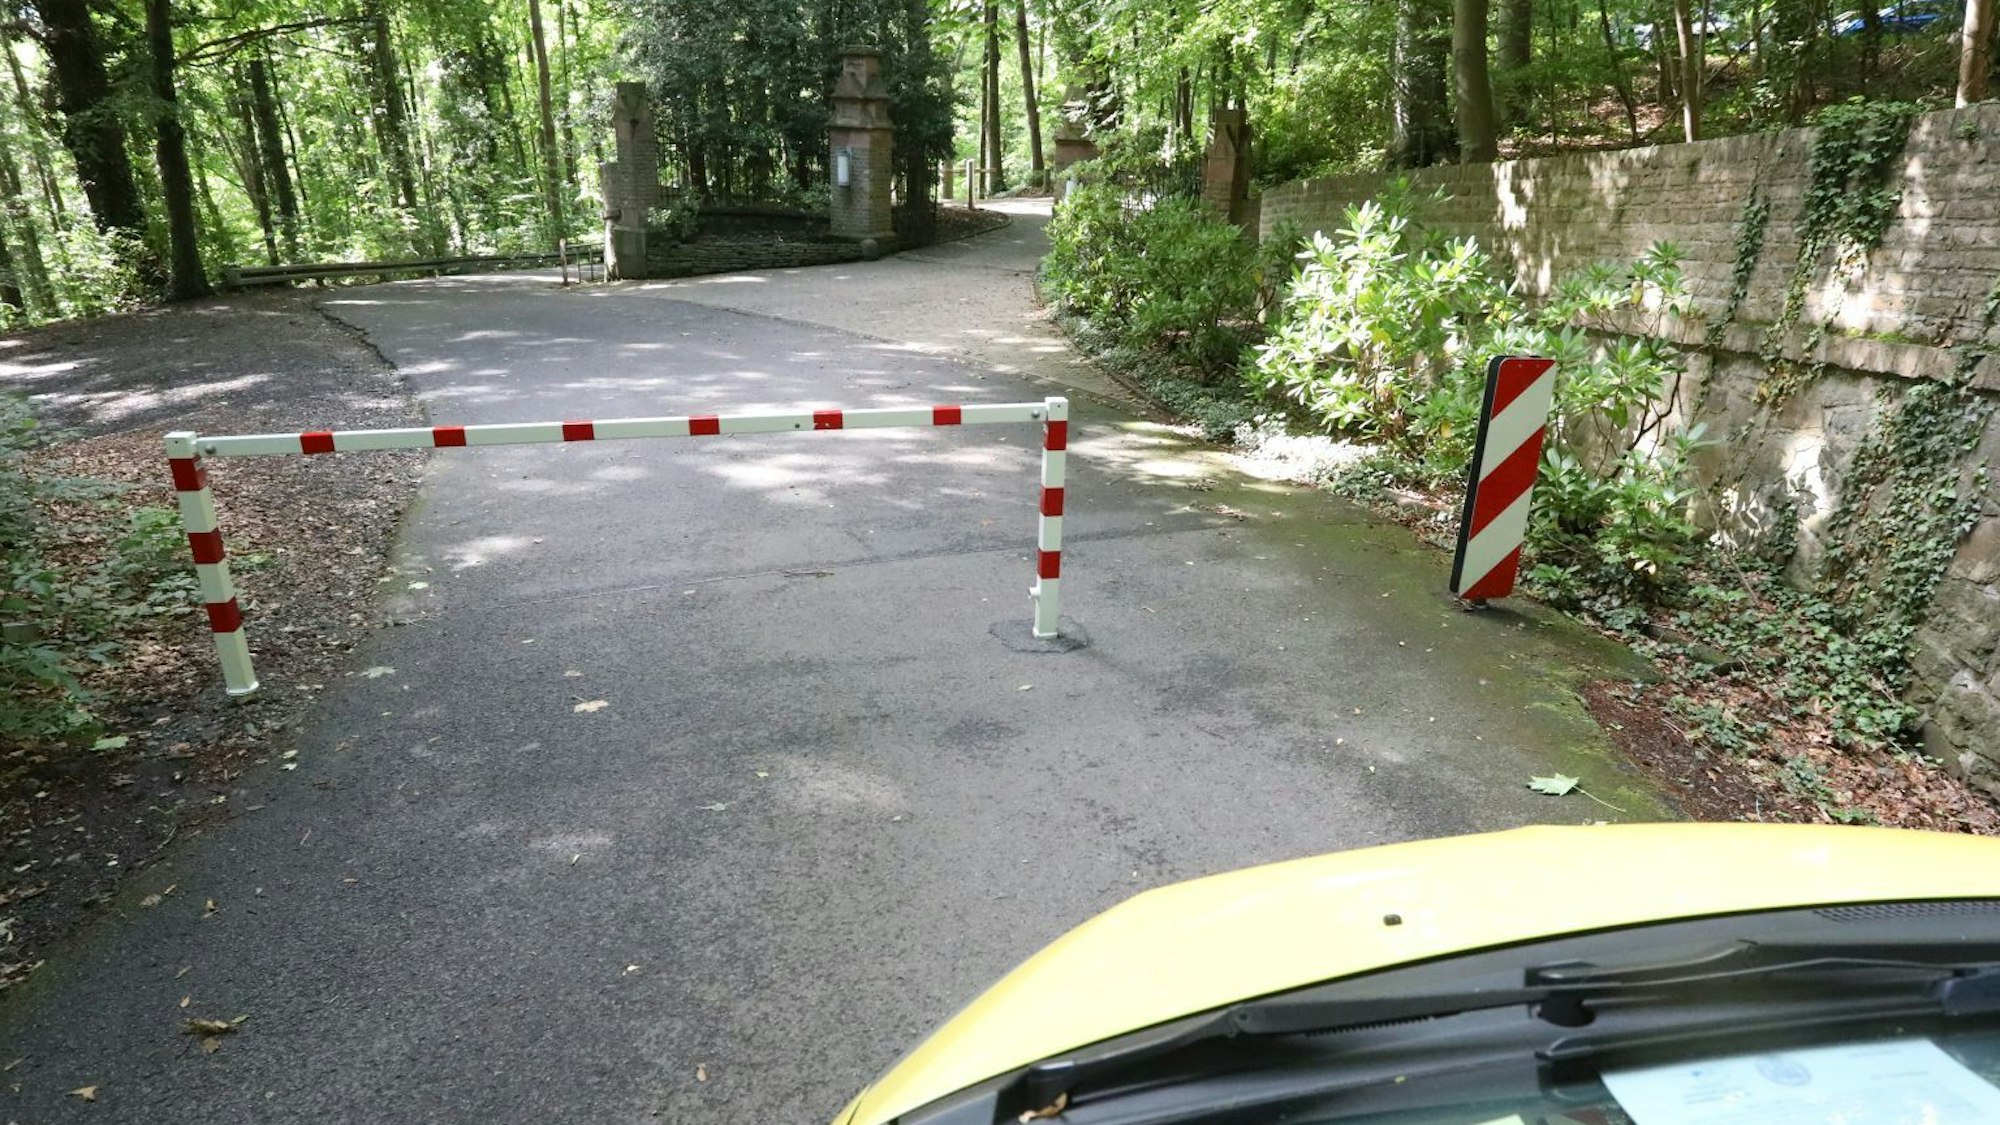 Die Front eines Autos ist im Bild, das vor einer rot-weiß gestreiften Sperre steht. Dahinter ist eine Straße in Wald zu erkennen.